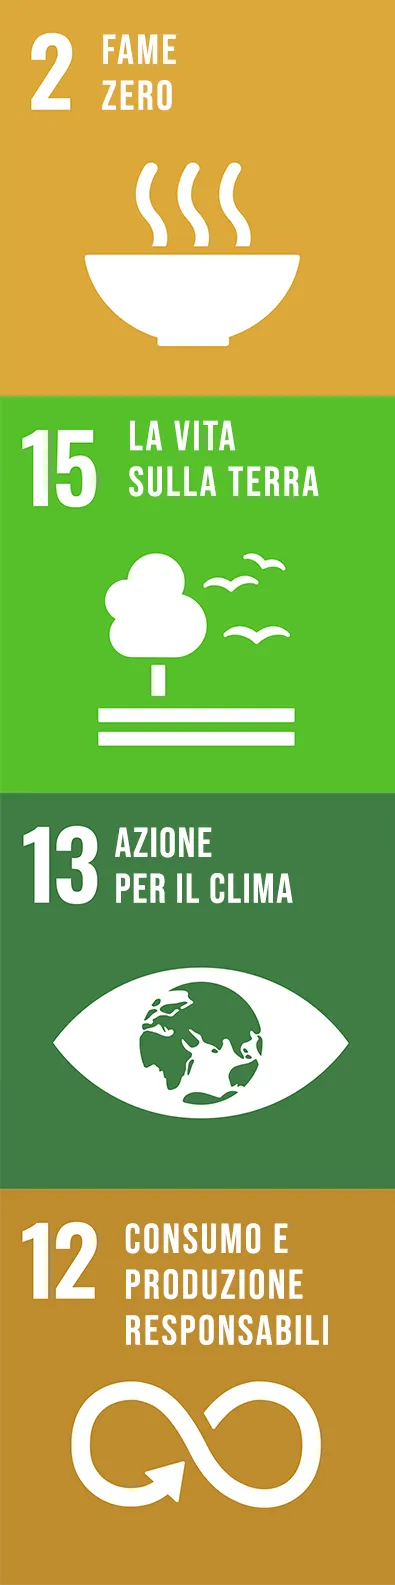 Obiettivi di sviluppo sostenibile dalla FAO: 2 - Fame zero, 15 - La vita sulla terra, 13 - Azione per il clima, 12 - Consumo e produzione responsabili